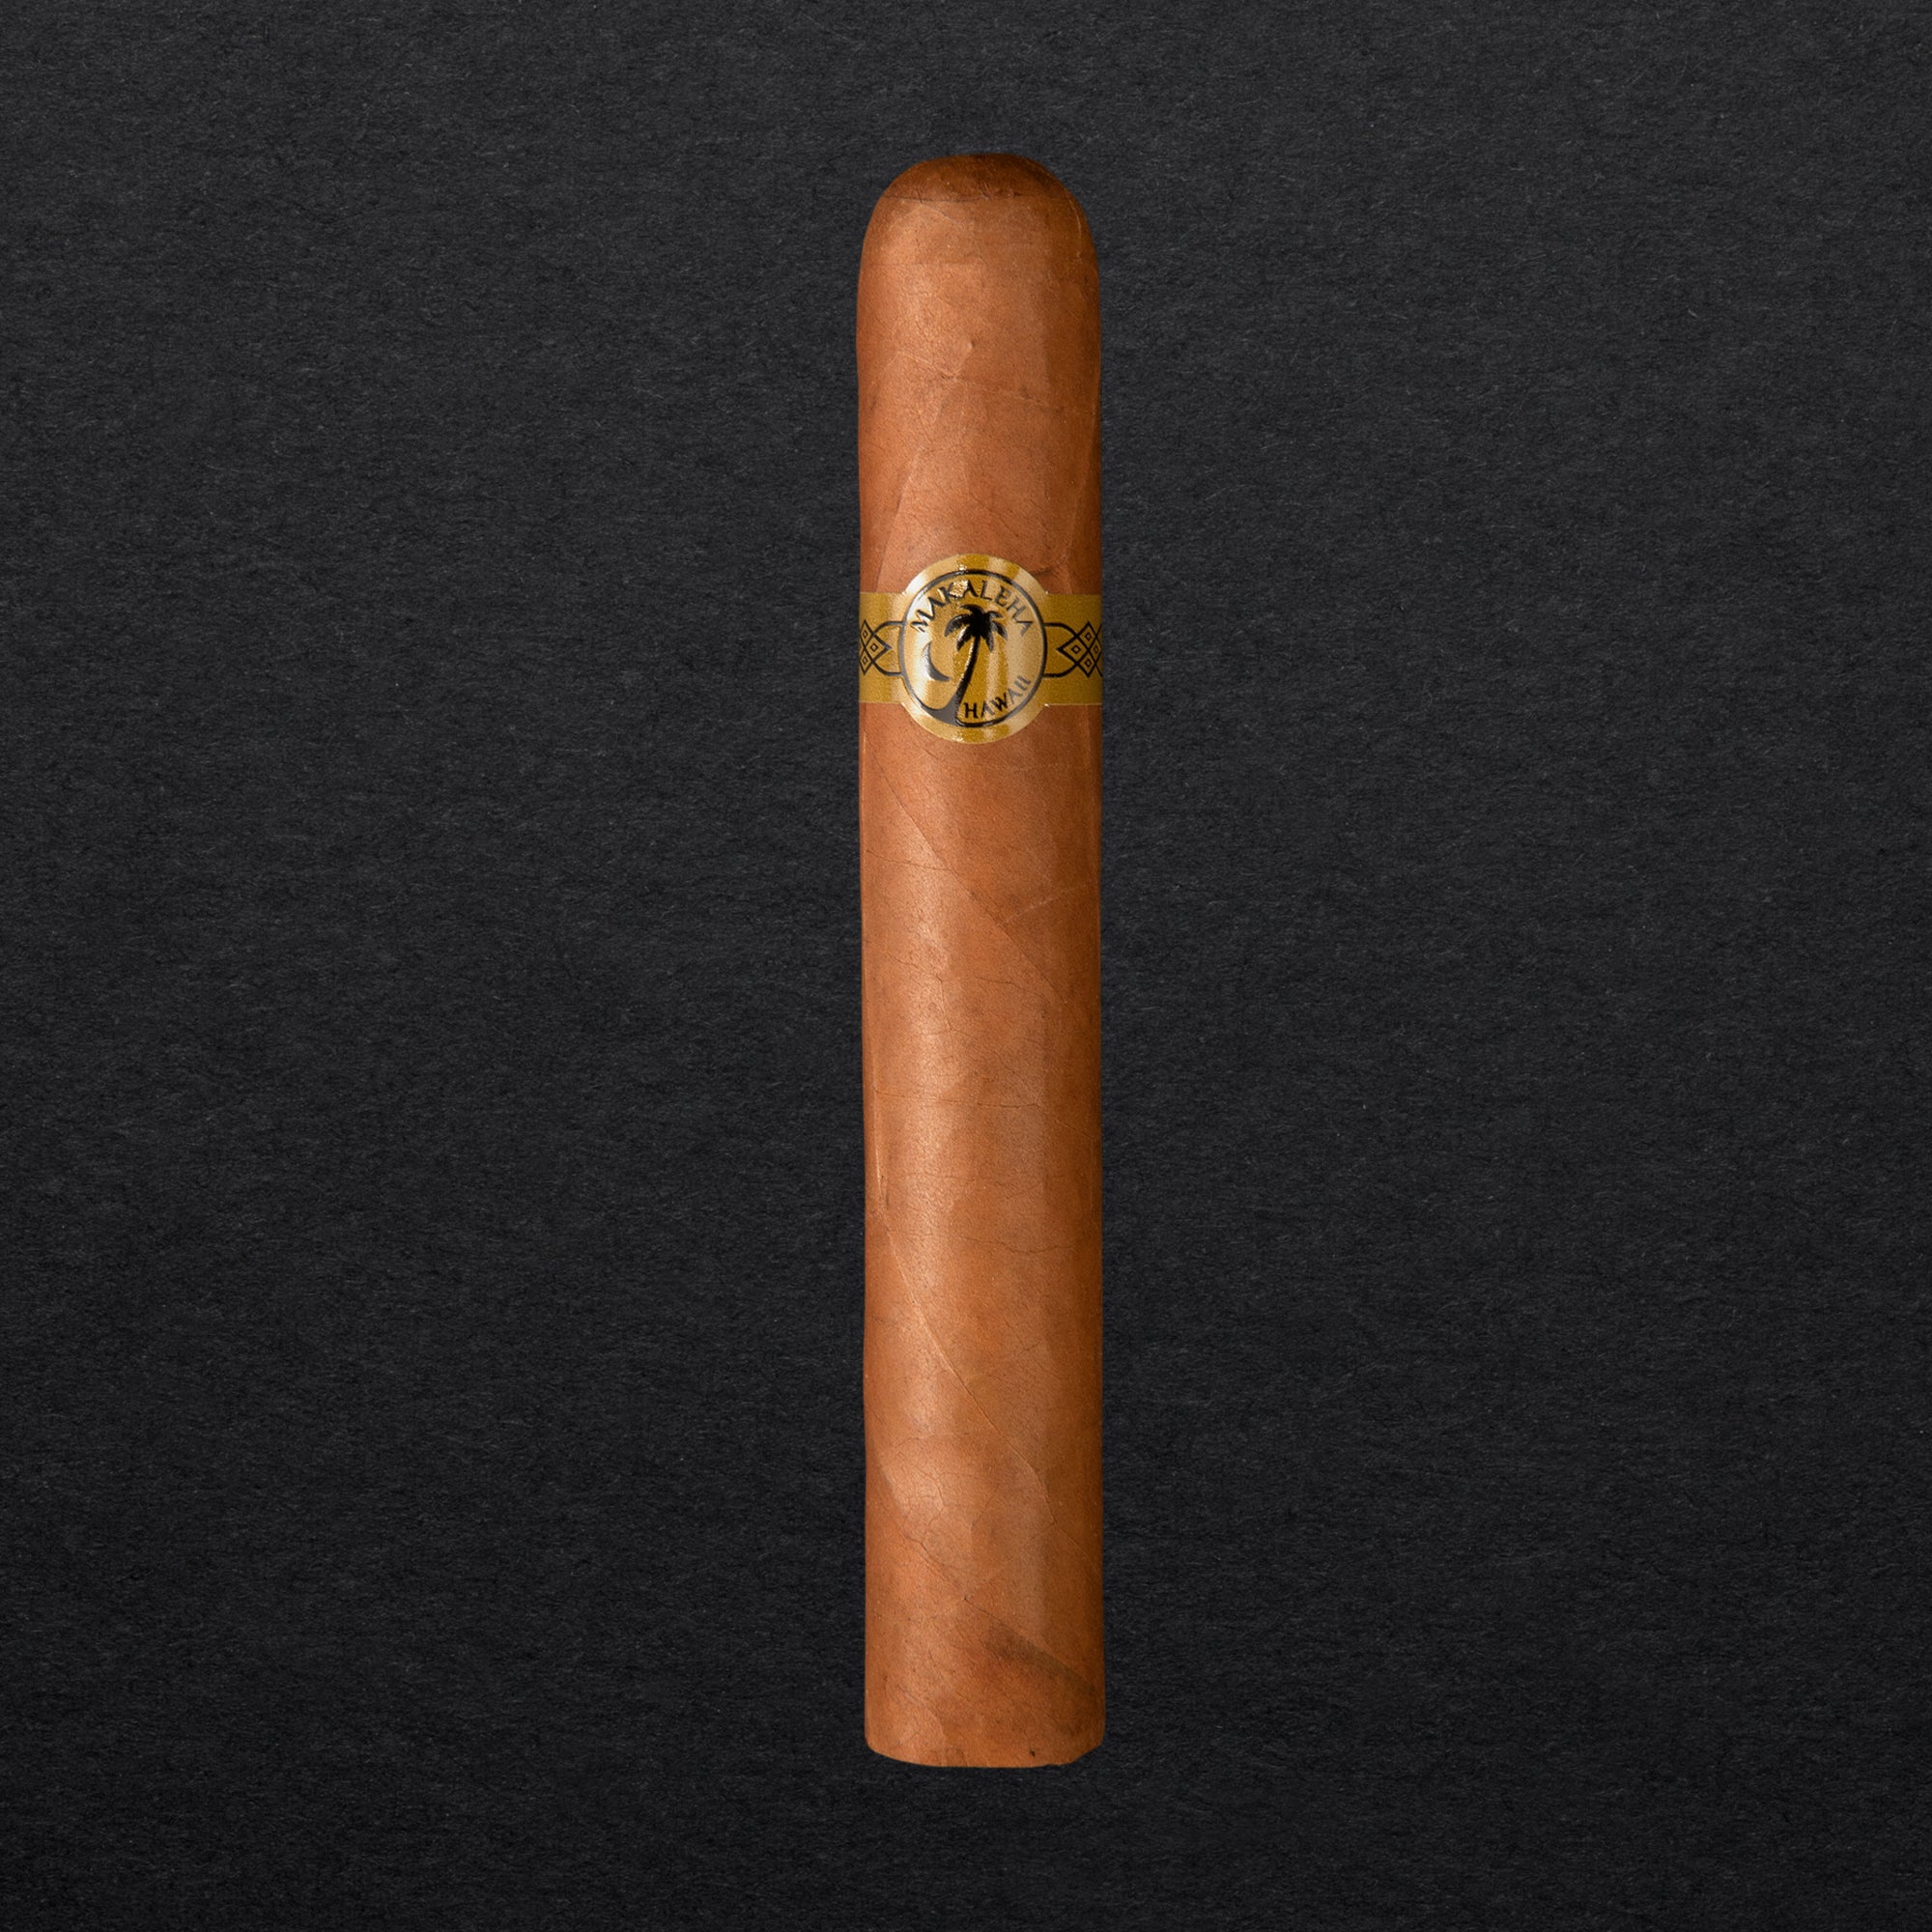 Makaleha - Nui Loa Cigars